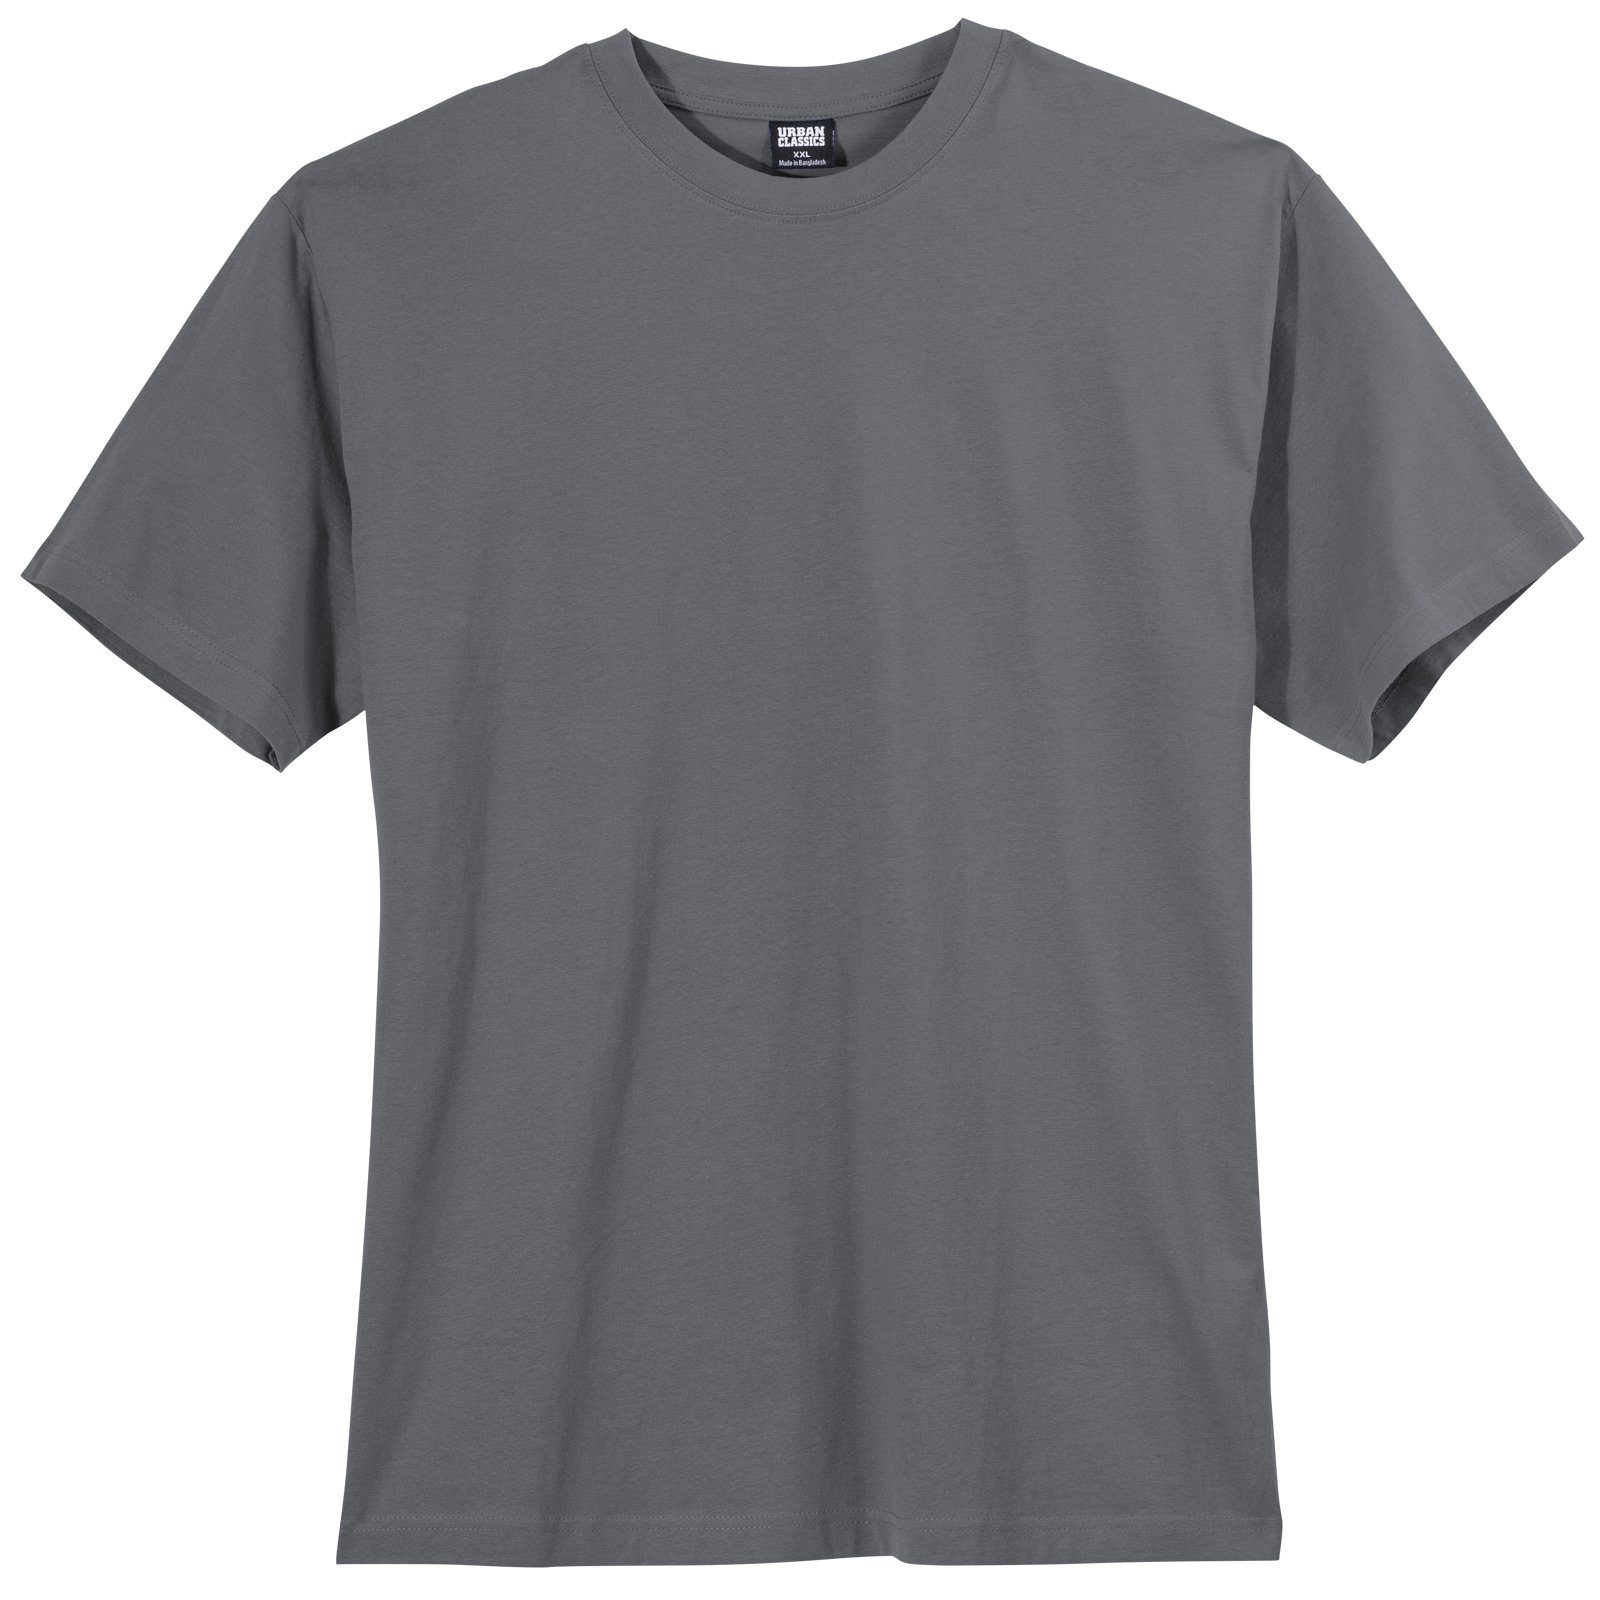 Only Oversize Shirts für Damen online kaufen | OTTO